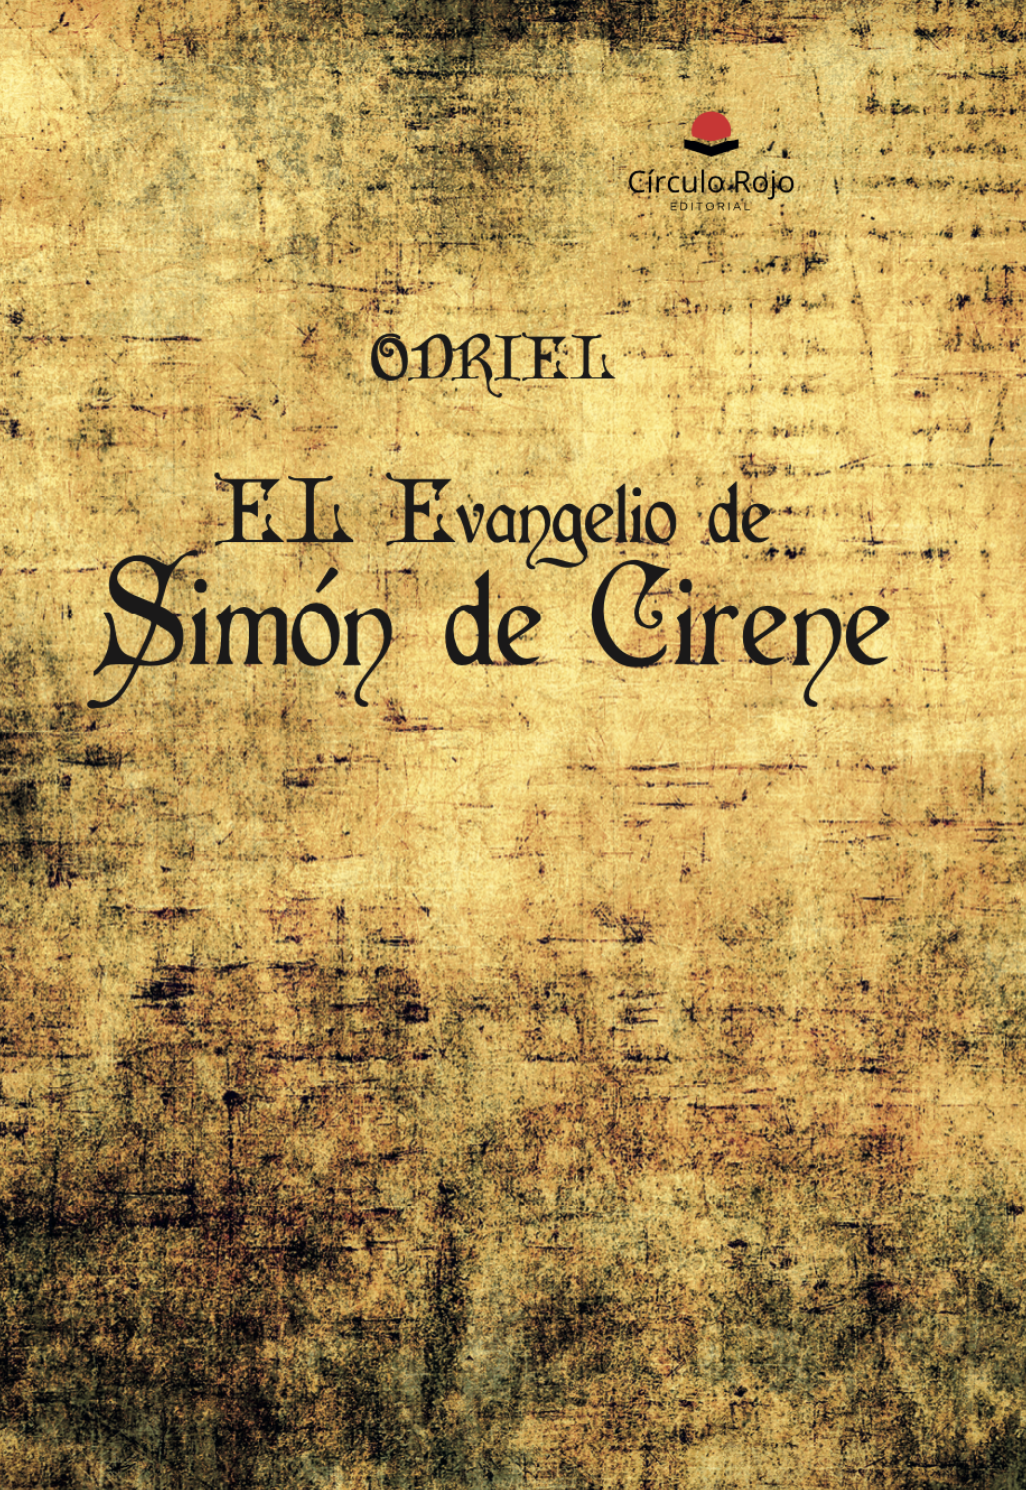 ODRIEL, nos cuenta todo sobre su obra “El Evangelio de Simón de Cirene”, obra que ha publicado con Círculo Rojo.